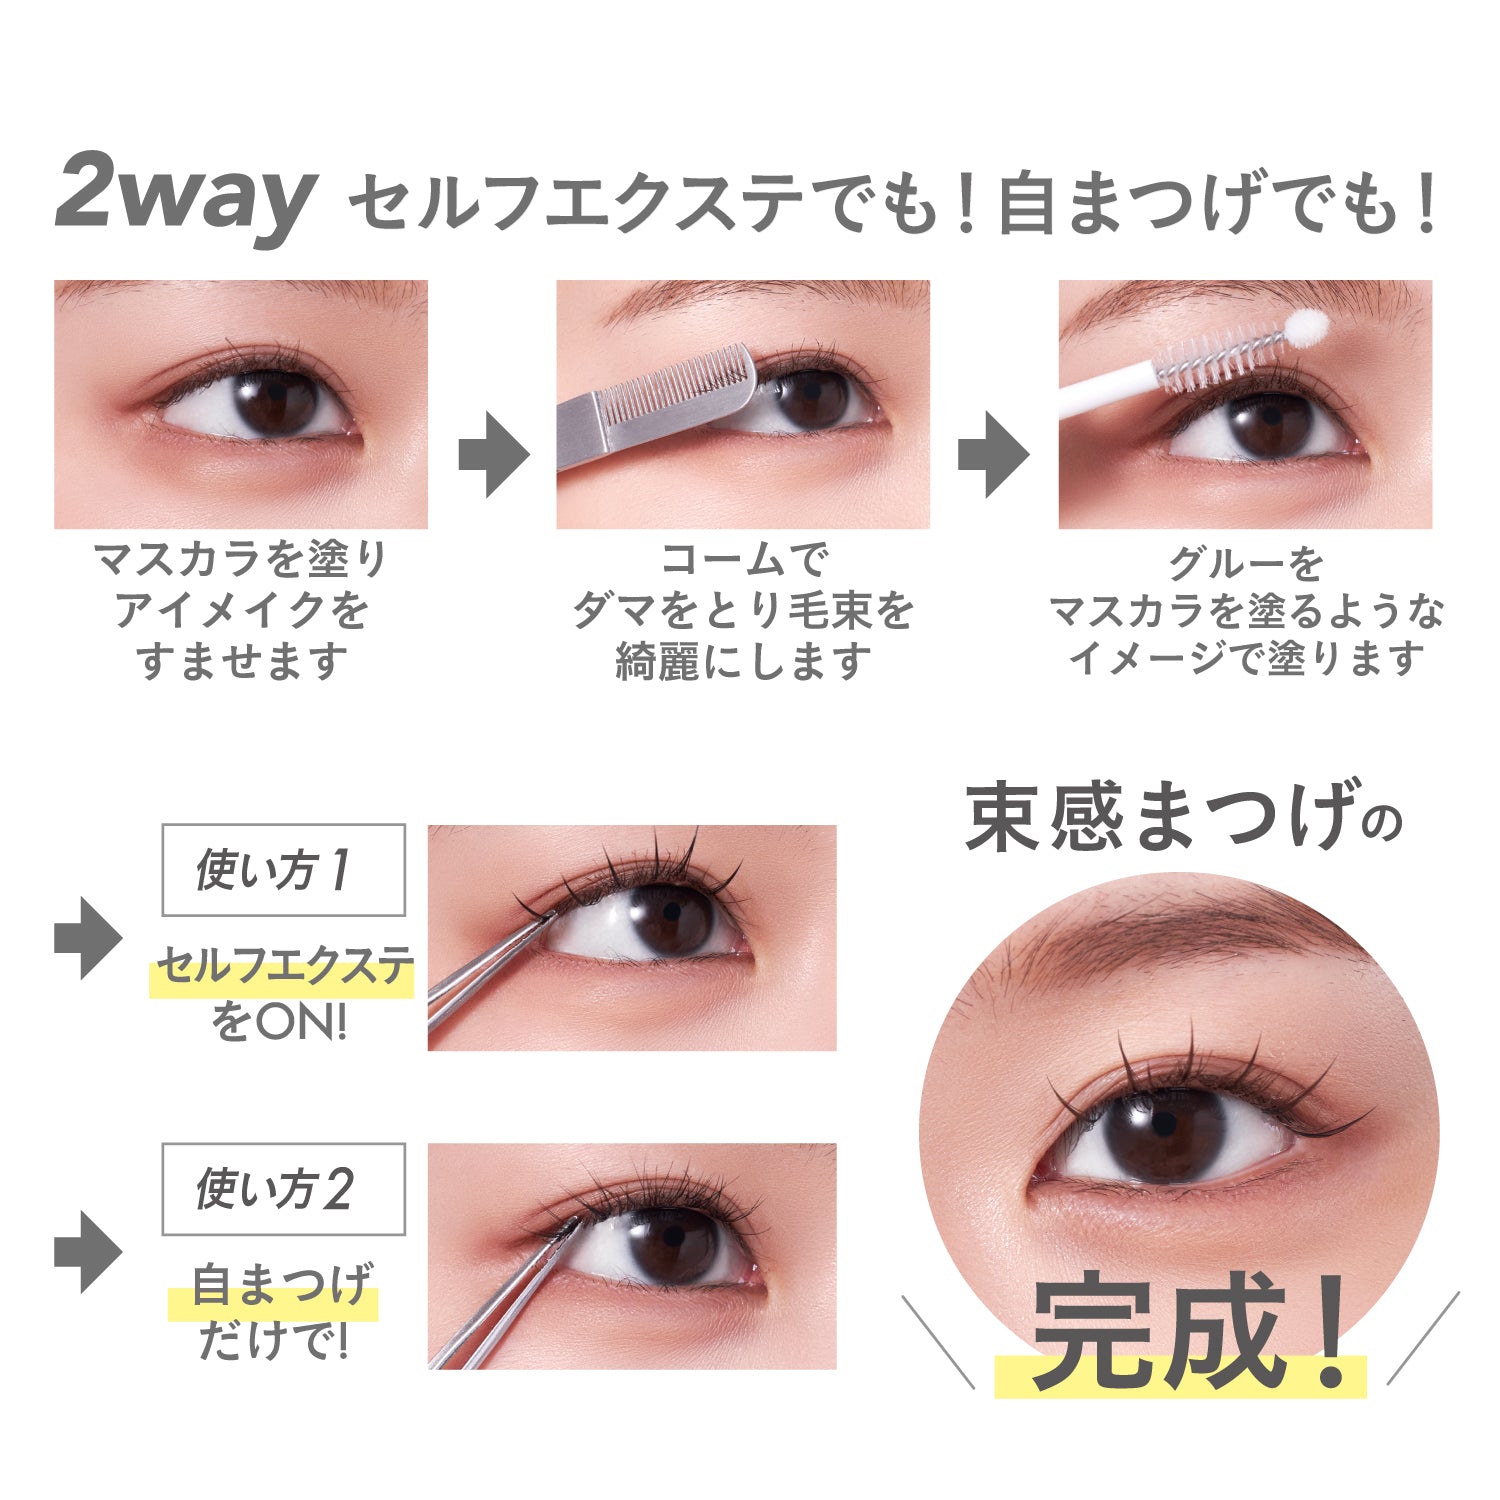 eyelash tweezers